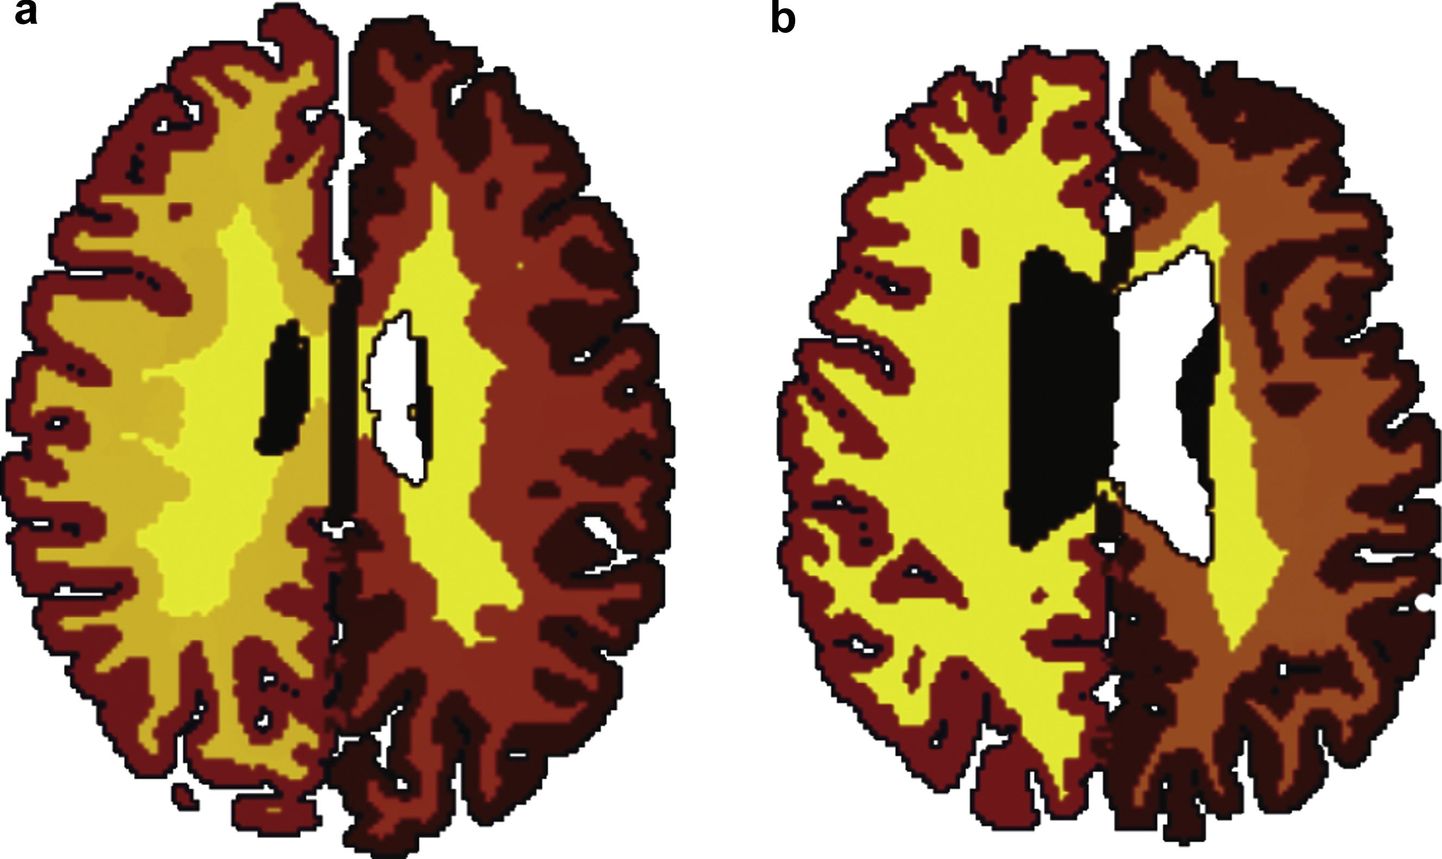 Valgeolluse vähenemine (a) kõhna 56-aastase inimese ajus ja (b) rasvunud 50-aastase ajus.